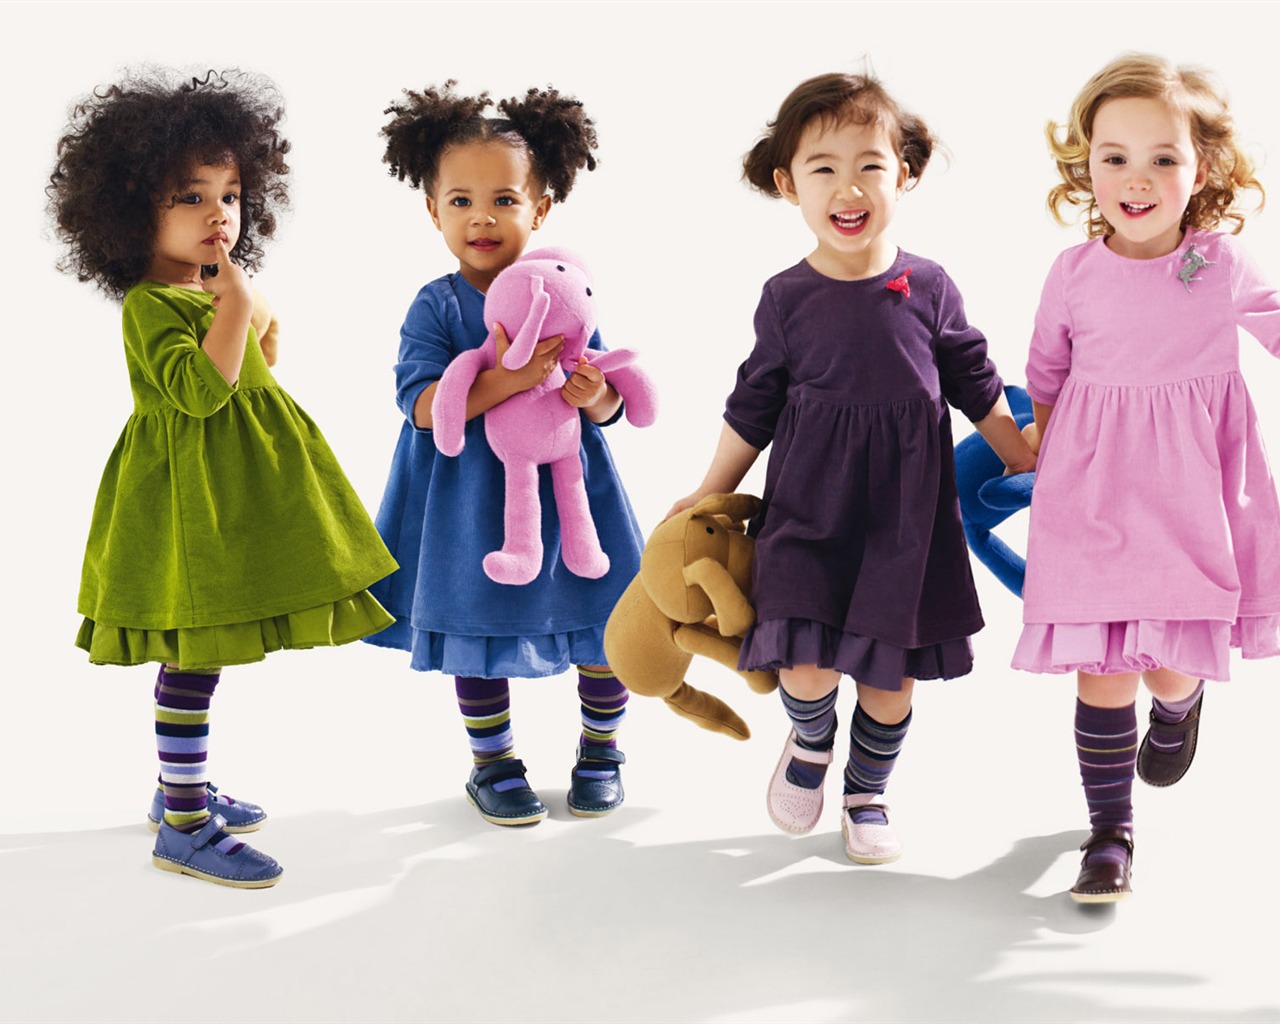 Colorful Children's Fashion Wallpaper (3) #10 - 1280x1024